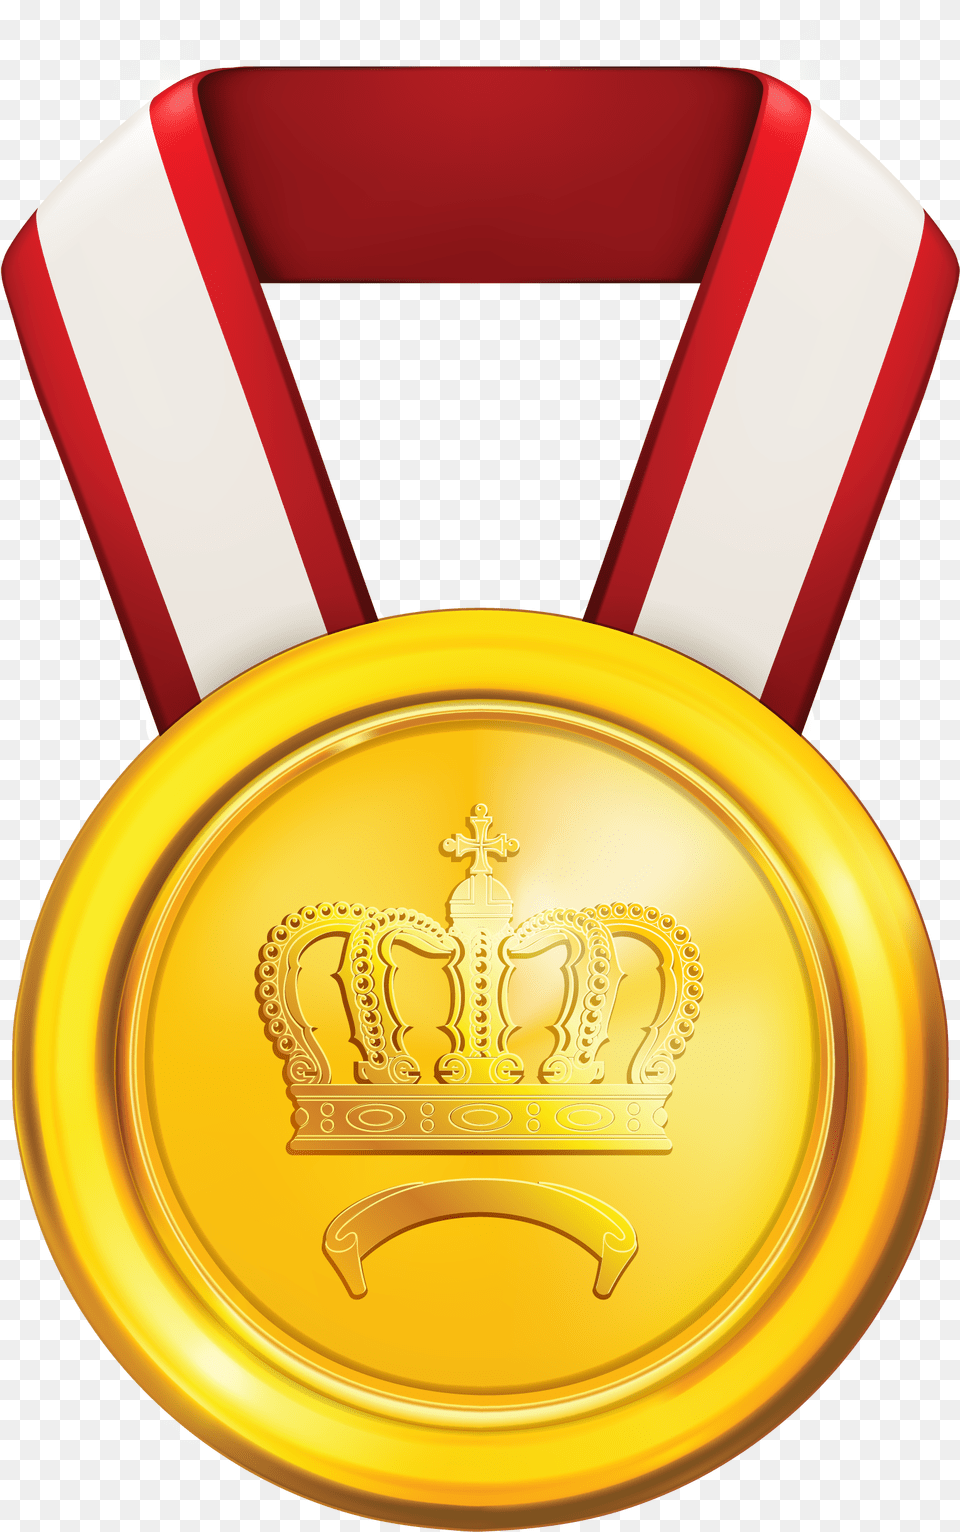 Gold Medal Medal Of Honour Clip Art, Gold Medal, Trophy Png Image